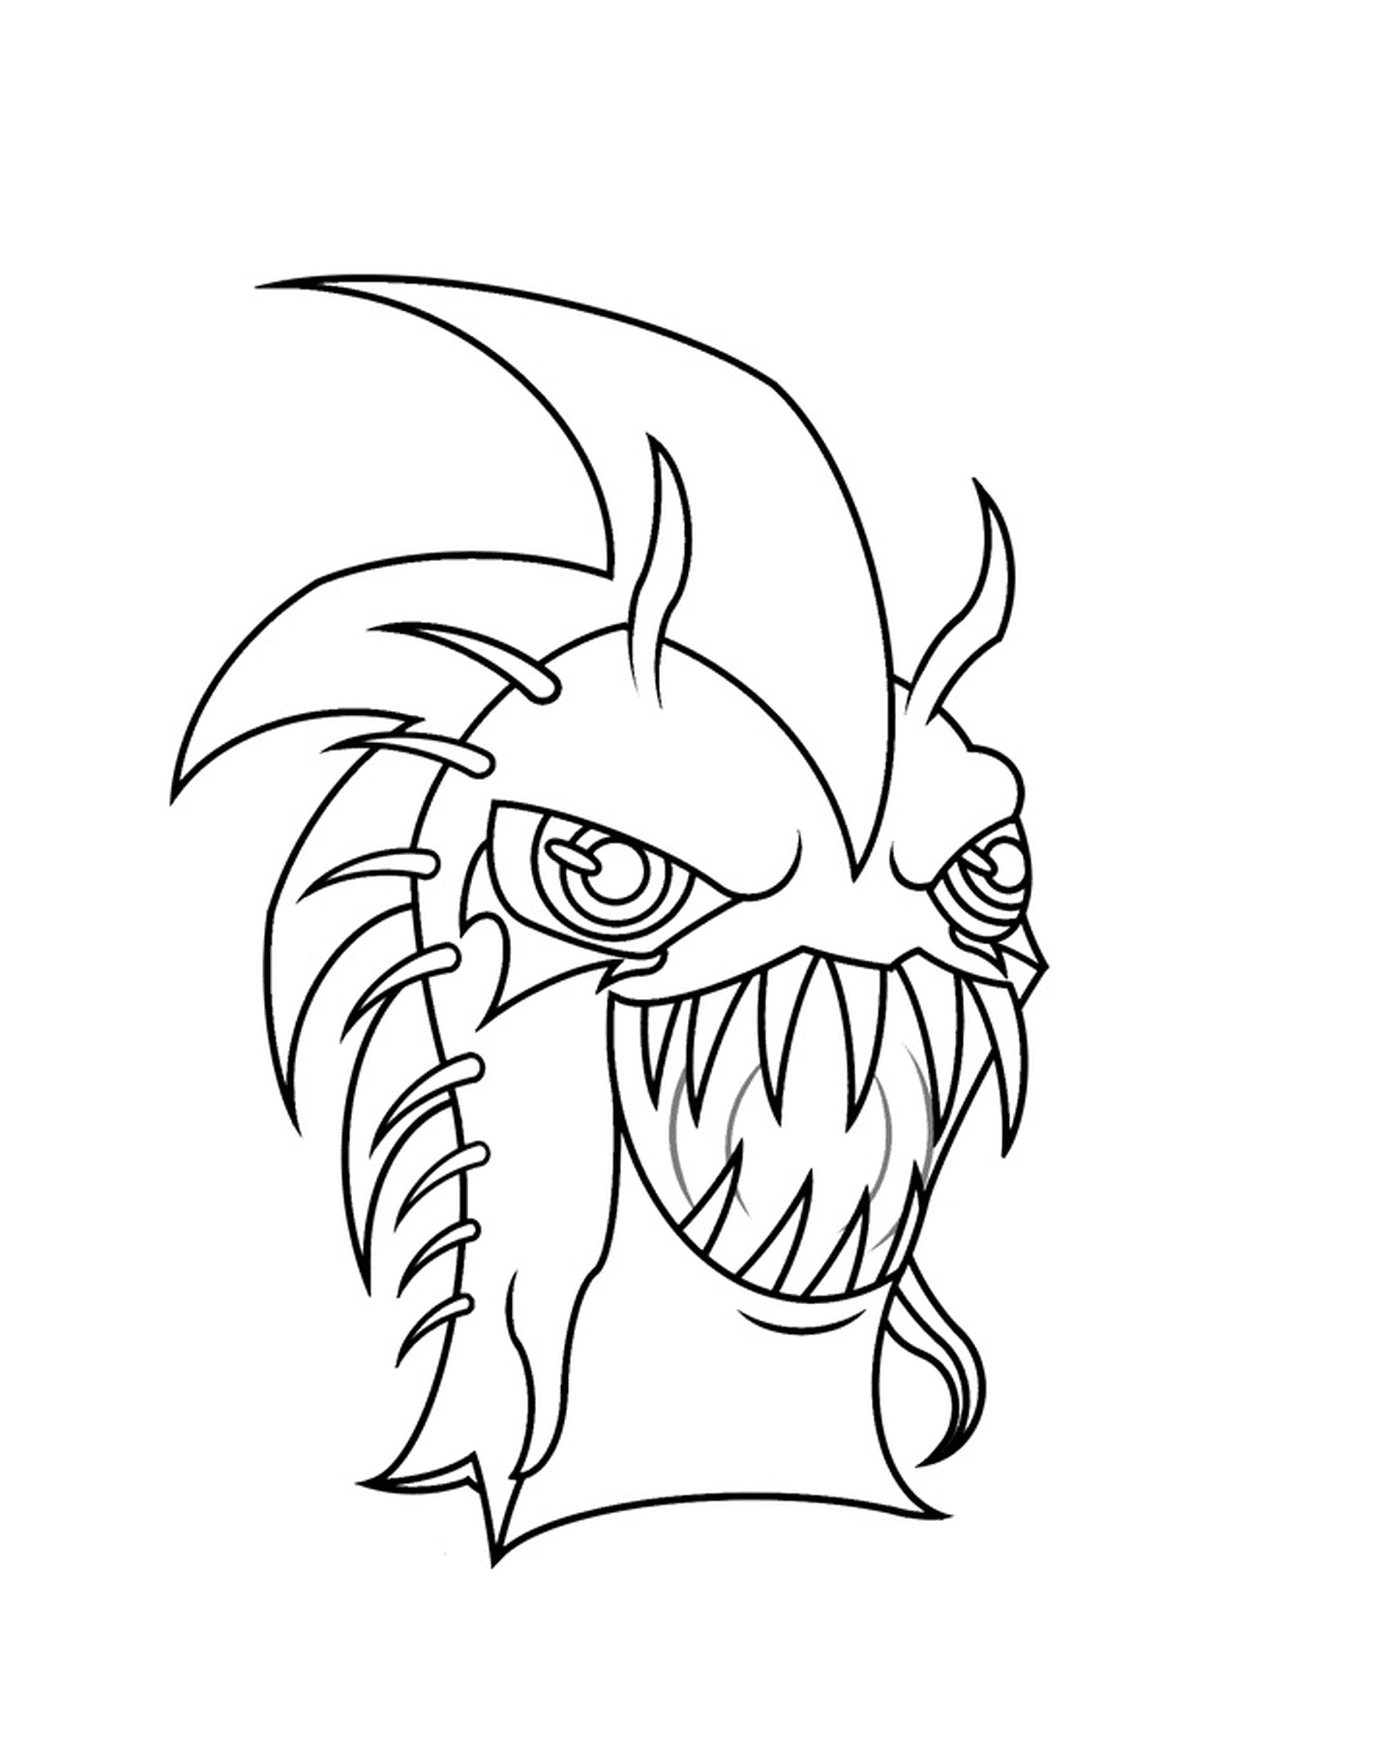  Urchin escuro, monstro com uma boca grande 